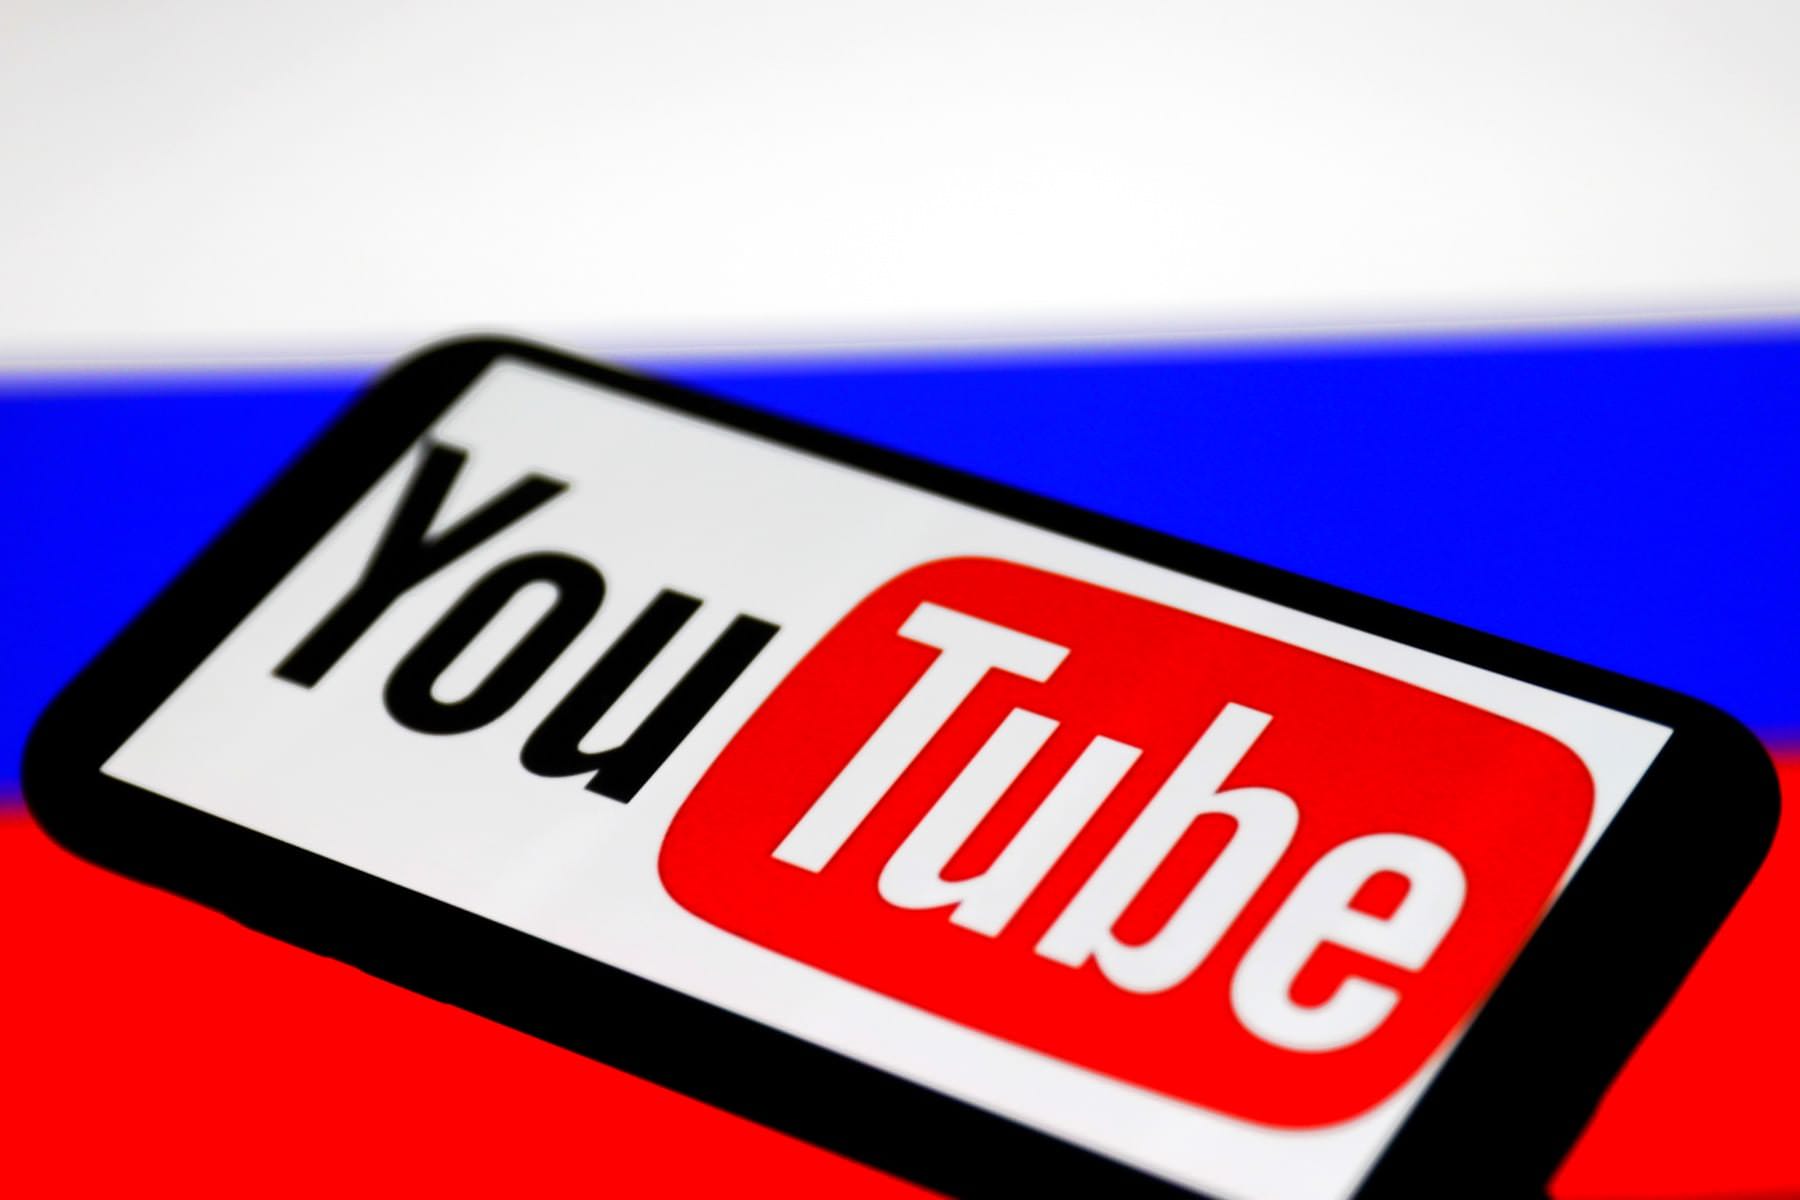 На платной основе. Смотреть любые видео на YouTube в России придется за деньги